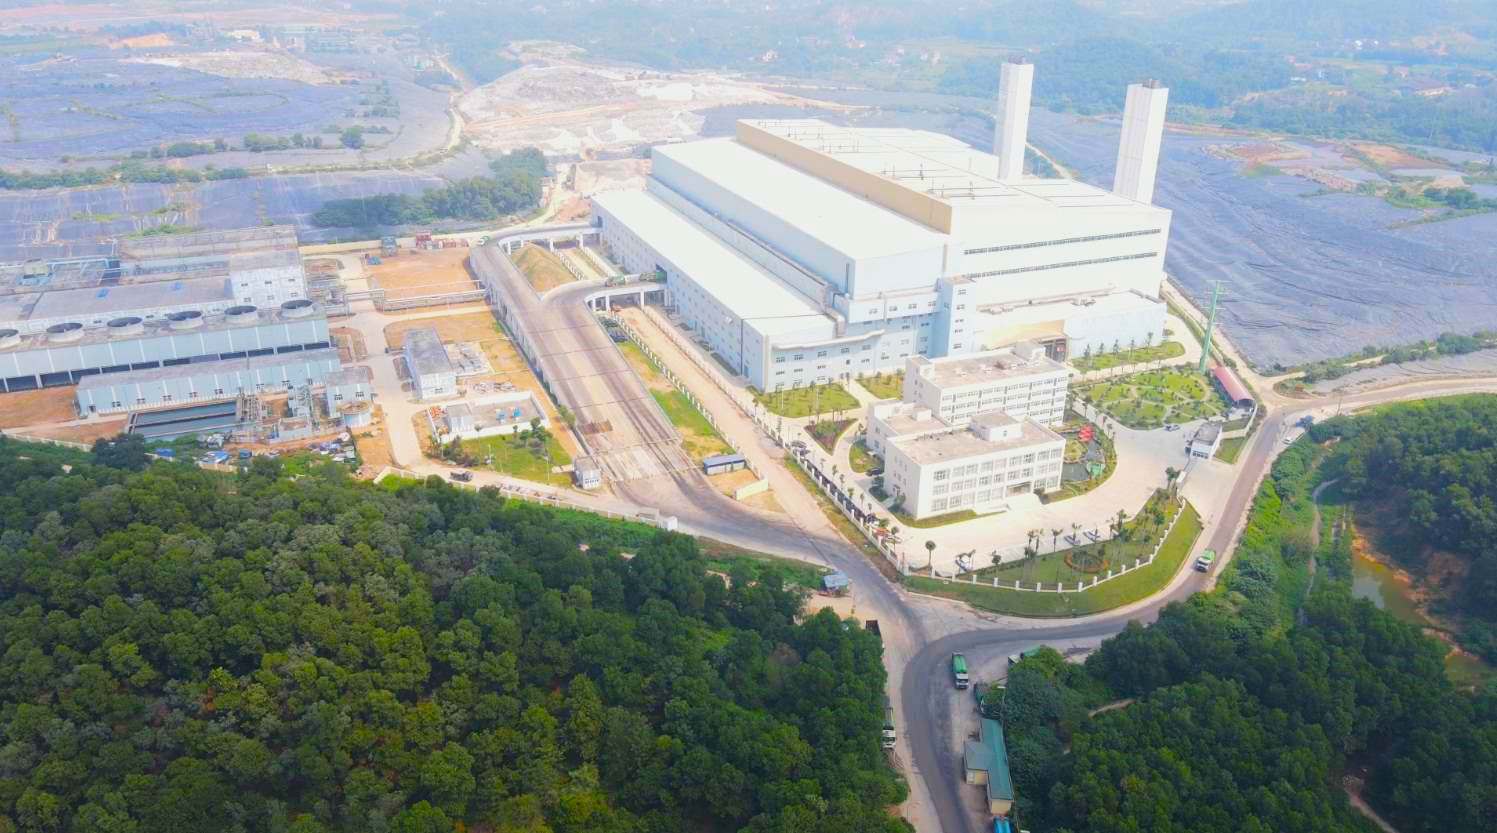 Nhà máy điện rác Sóc Sơn khởi công tháng 8.2019, trên diện tích 17,51 ha, thuộc Khu liên hợp xử lý chất thải rắn Nam Sơn (huyện Sóc Sơn, Hà Nội) có tổng mức đầu tư hơn 7.000 tỉ đồng. Ảnh: Hải Danh